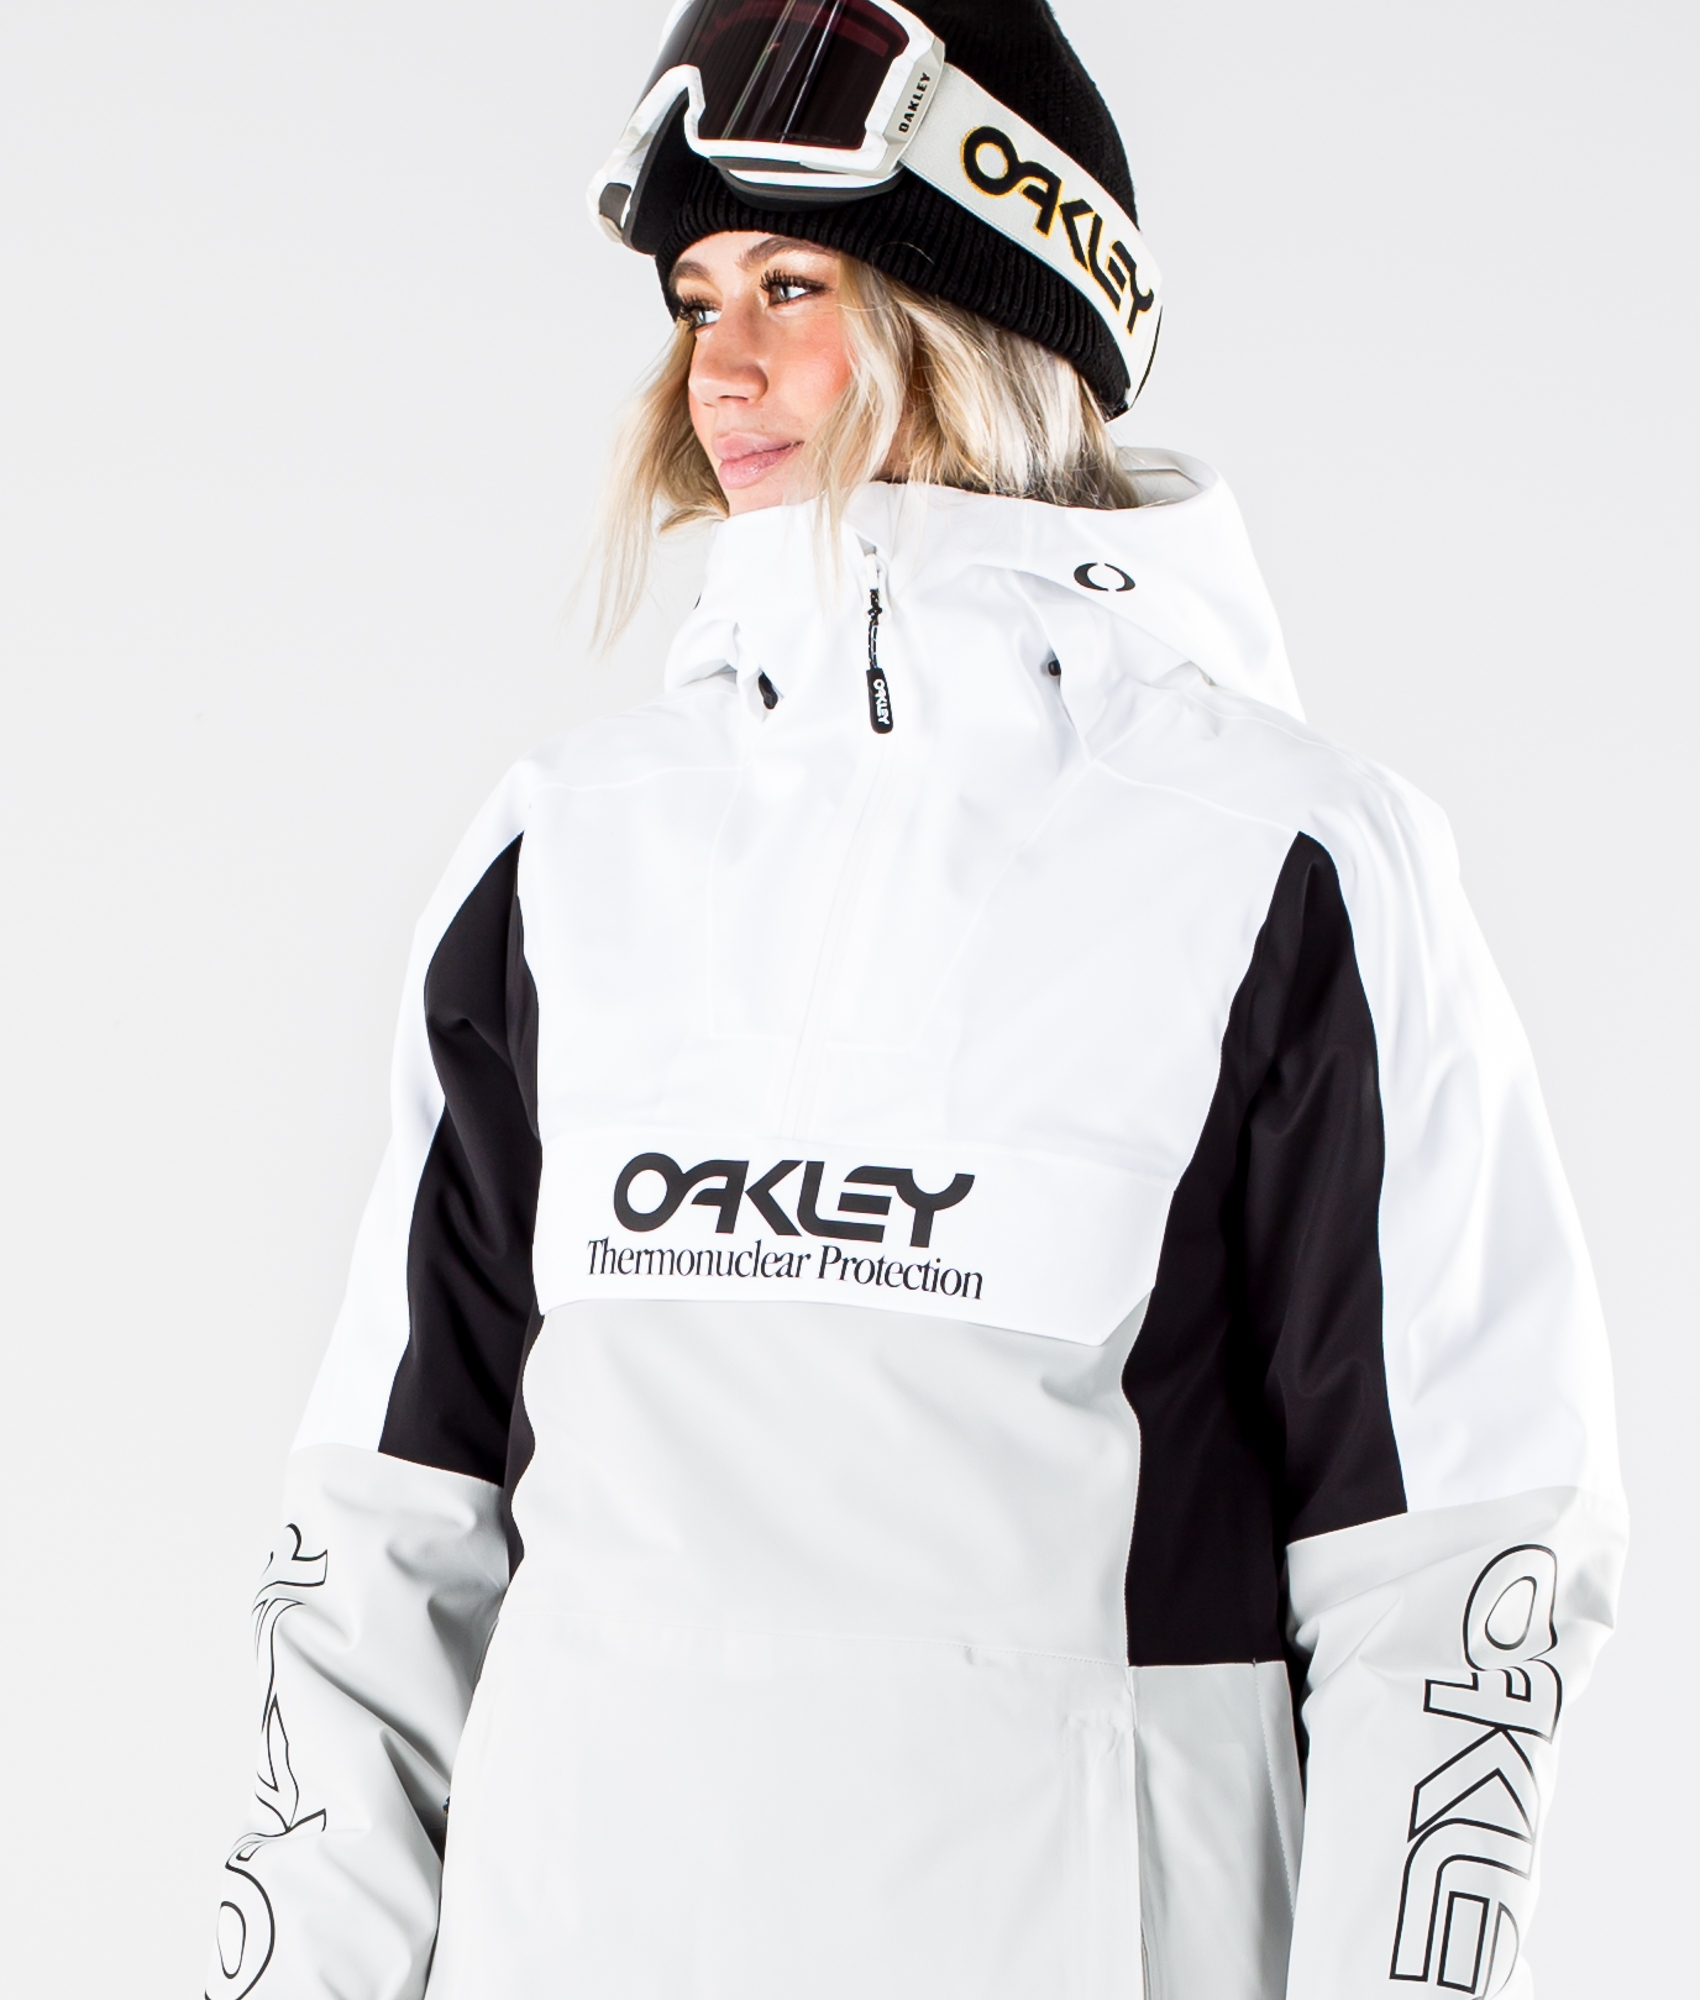 oakley ski jackets womens